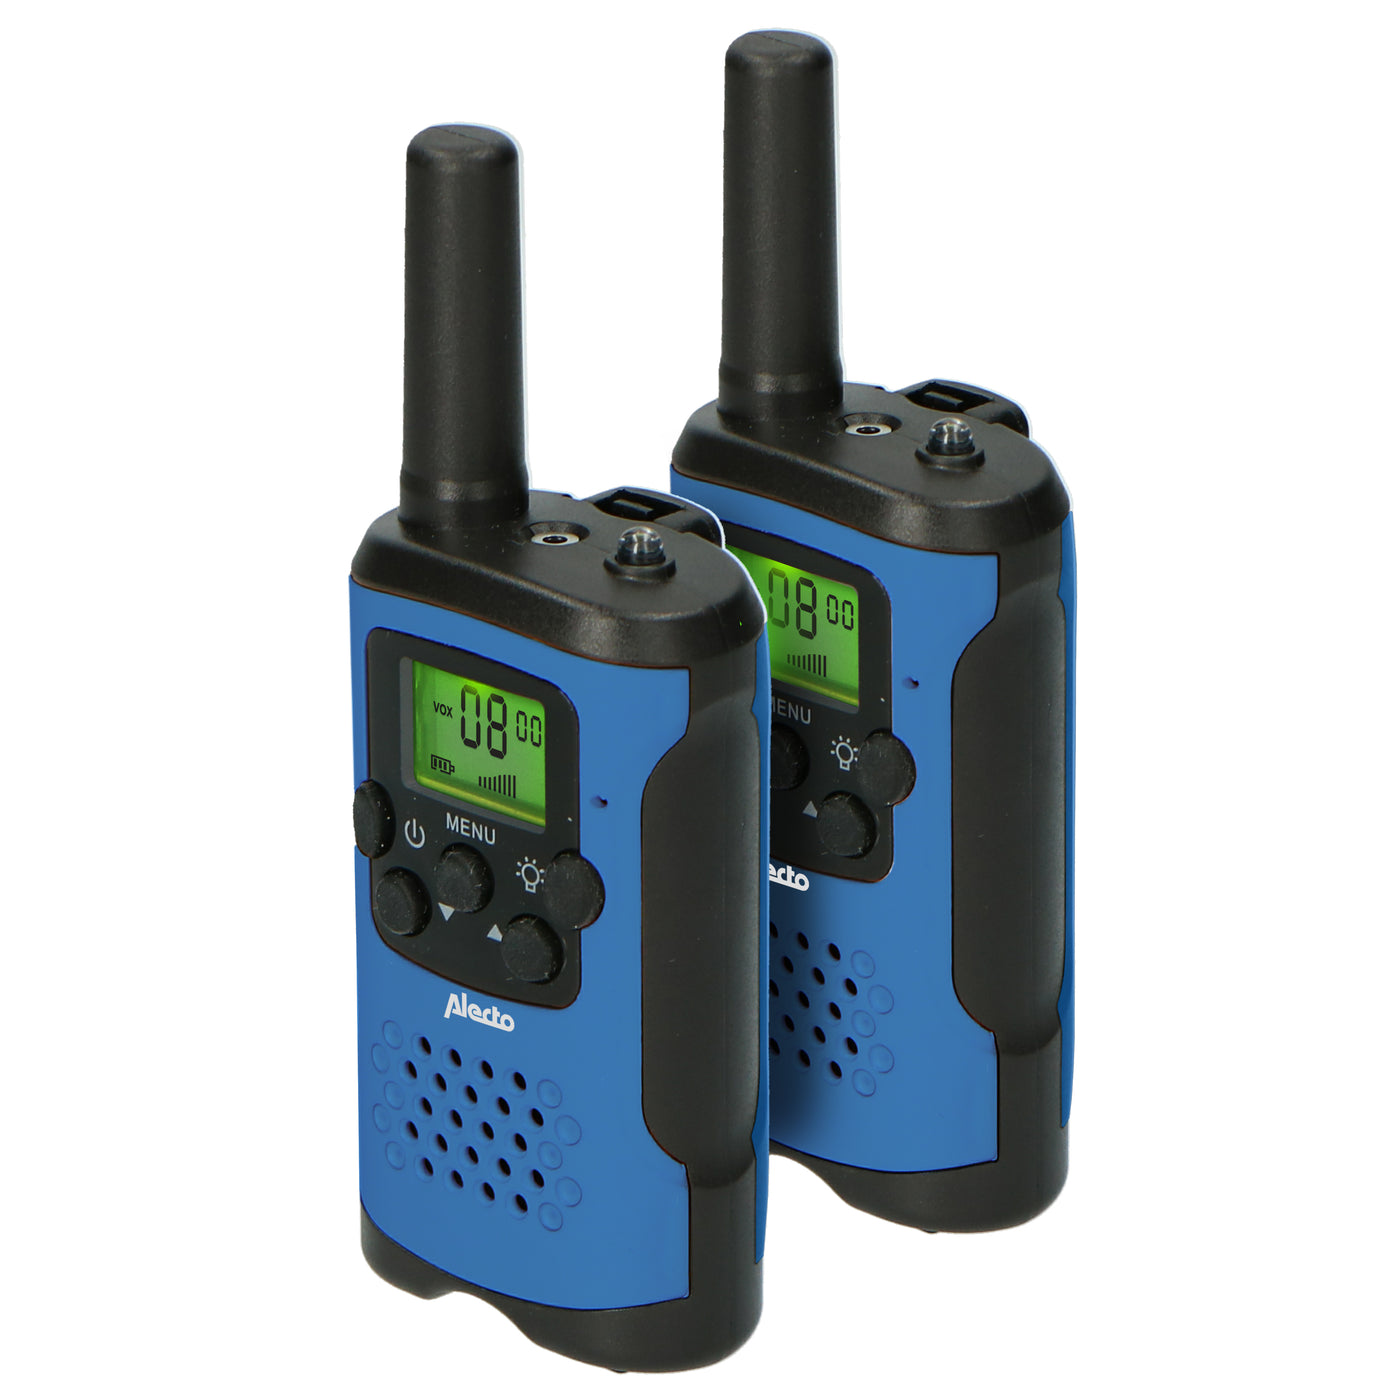 Alecto FR-115BW - Lot de deux talkie-walkies pour enfants, Portée jusqu’à 7 kilomètres, blue/noir